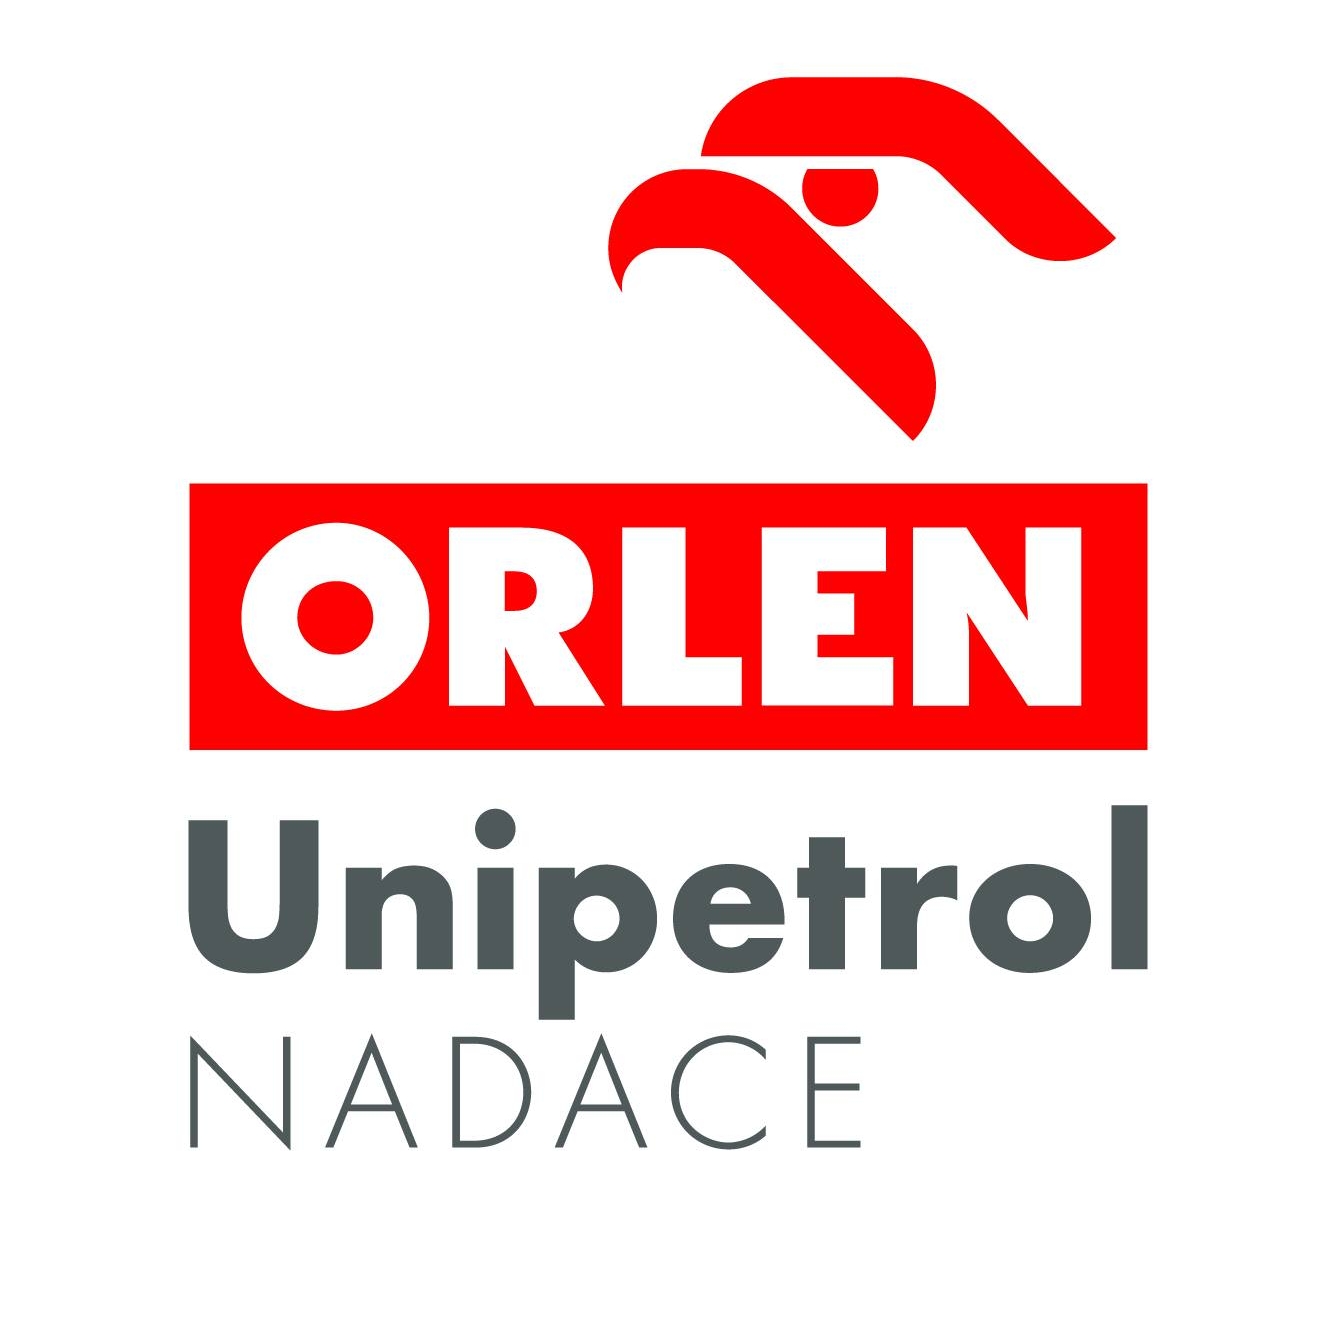 Nadace Unipetrol